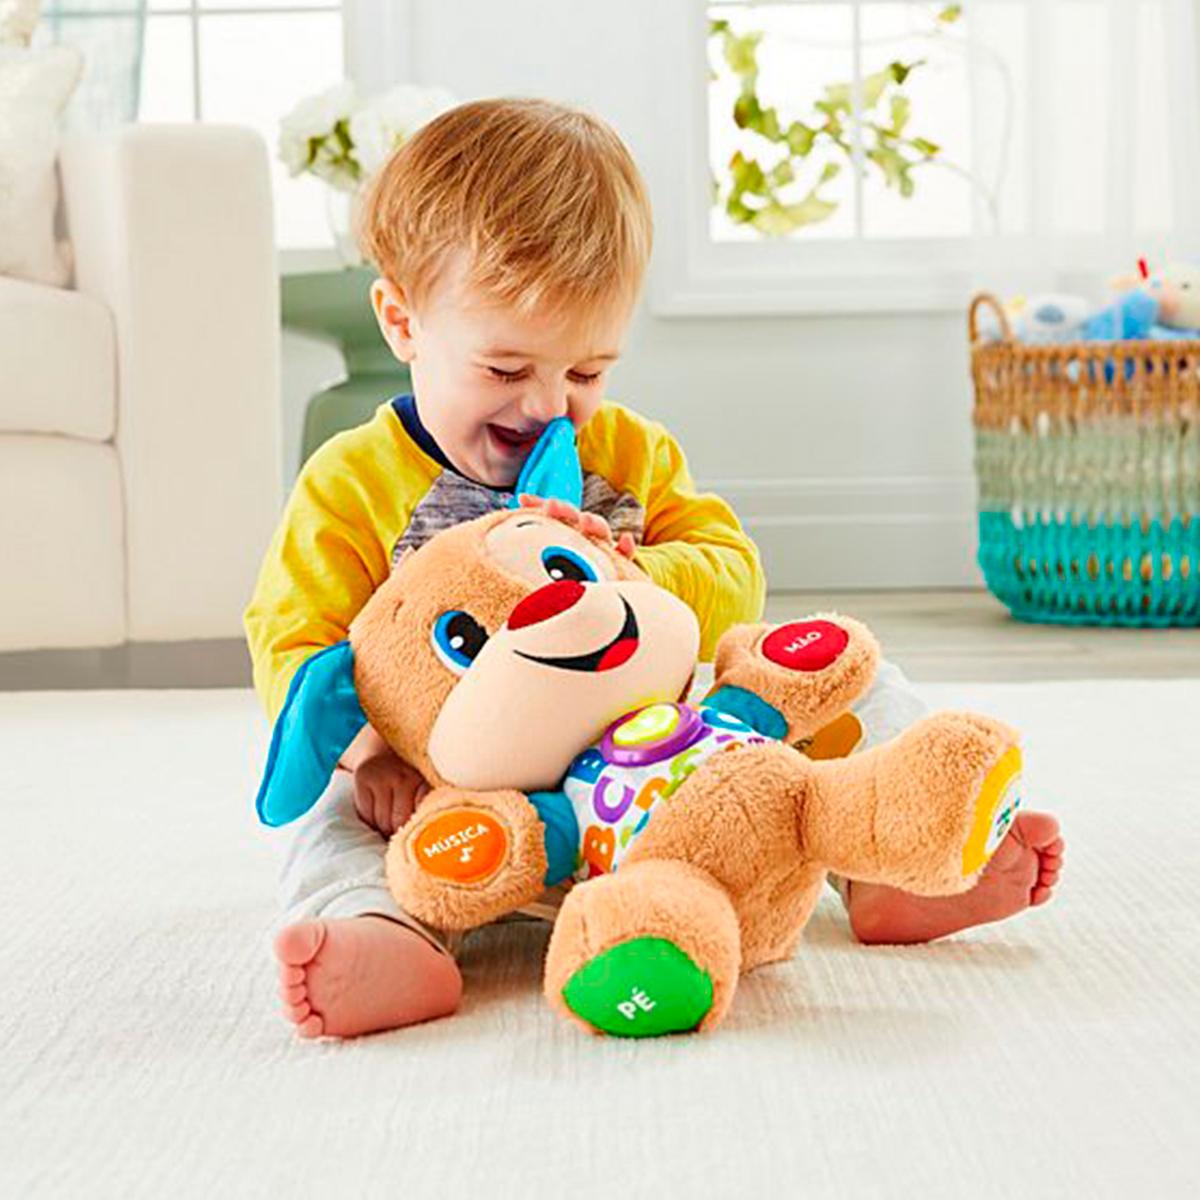 Fisher Price - Cãozinho Aprender e Brincar | Fisher Price core | Loja de  brinquedos e videojogos Online Toysrus